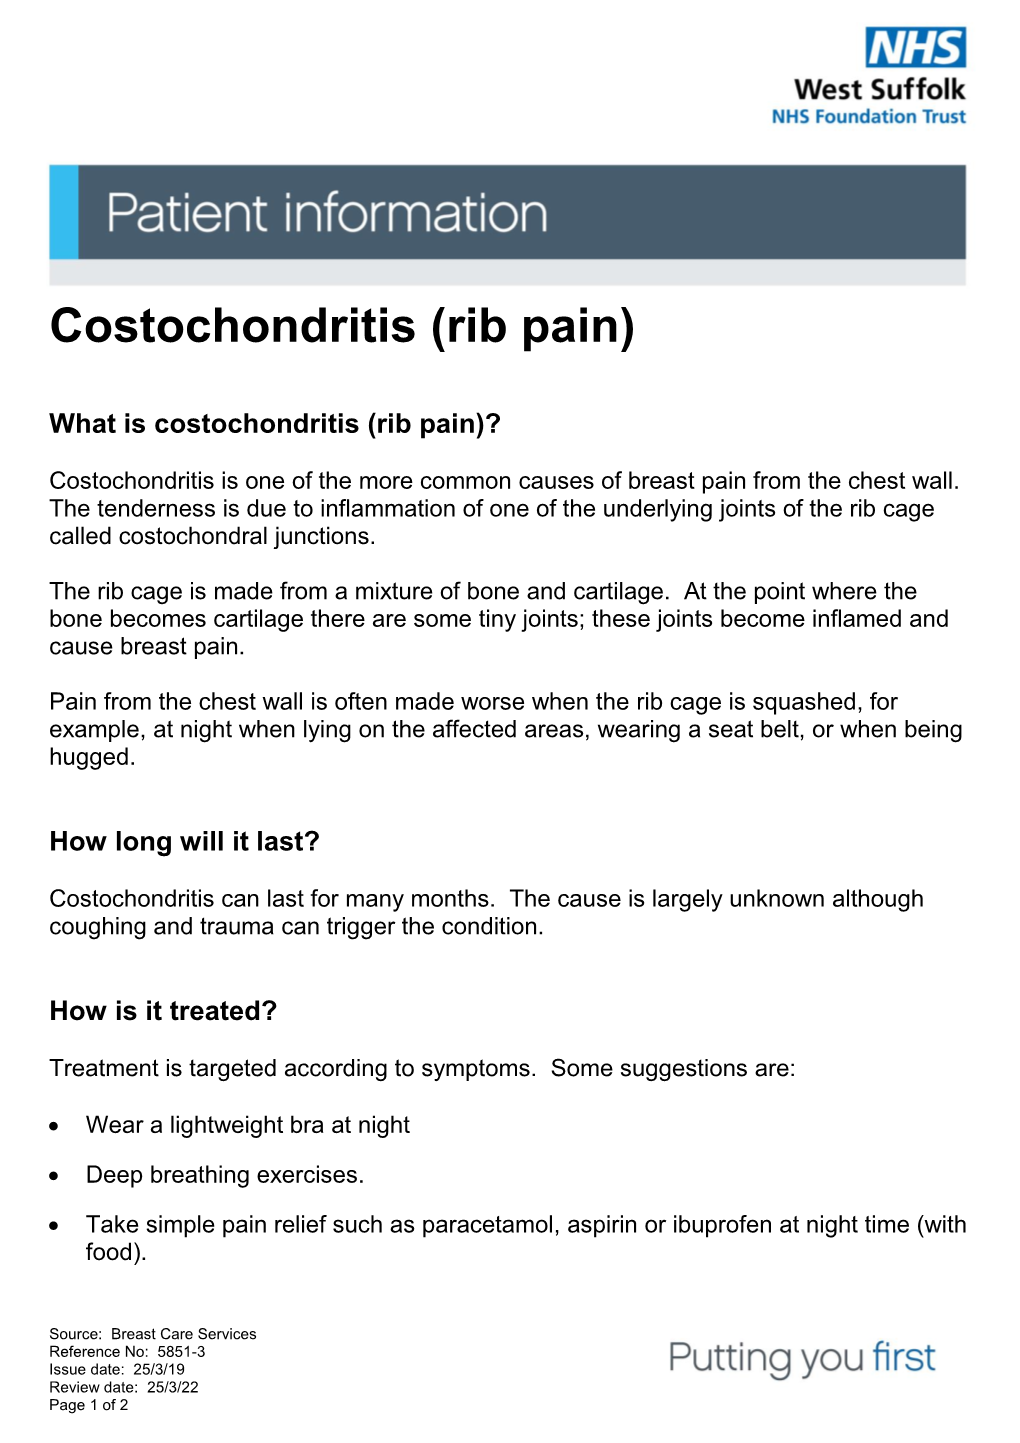 Costochondritis (Rib Pain)